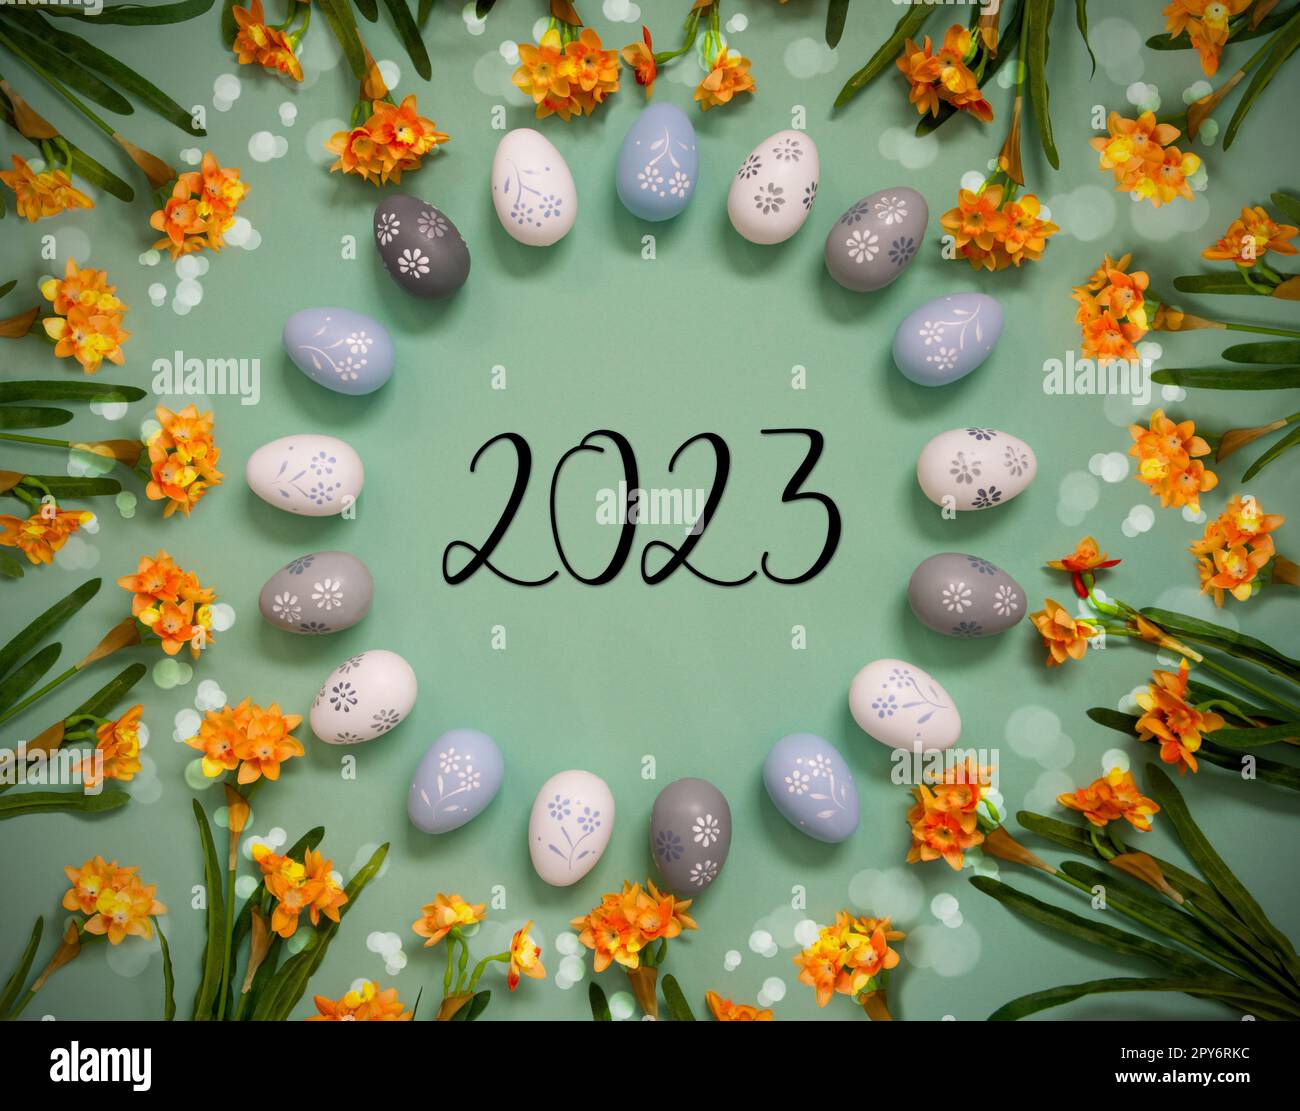 Décoration d'oeufs de Pâques, fleurs printanières, texte anglais 2023 Banque D'Images